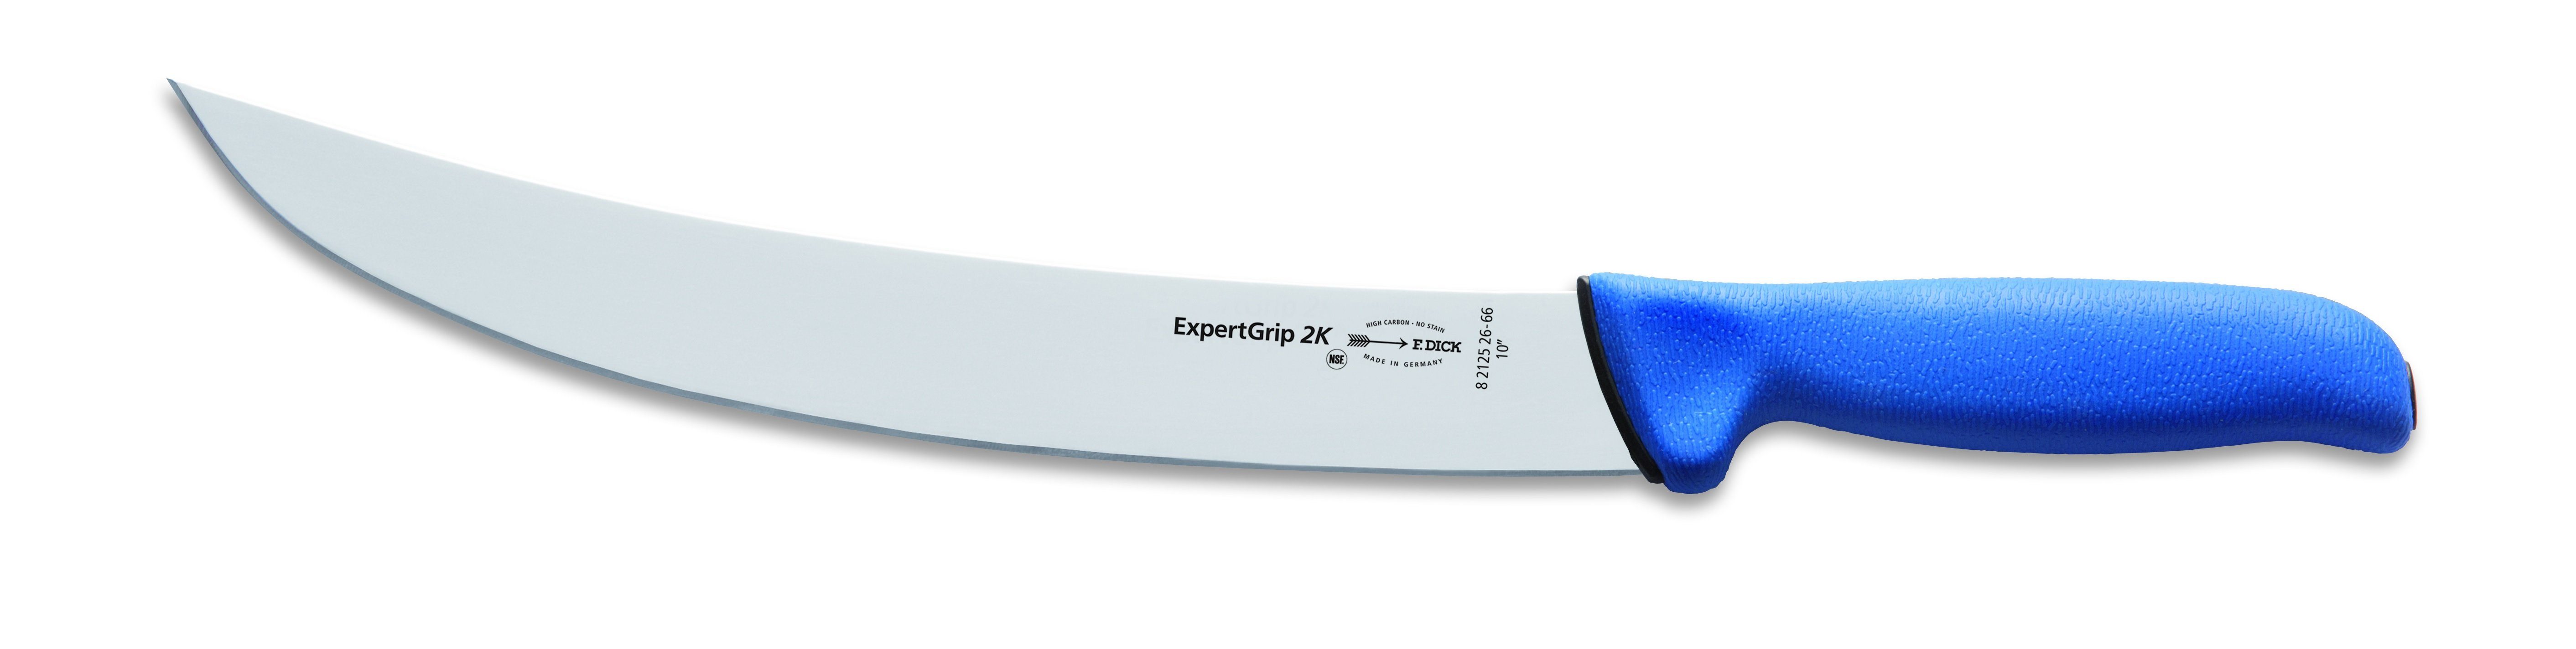 Dick Zubereitungsmesser Dick Zerlegemesser Expert Grip 2K Messer 26 cm 8212526-66